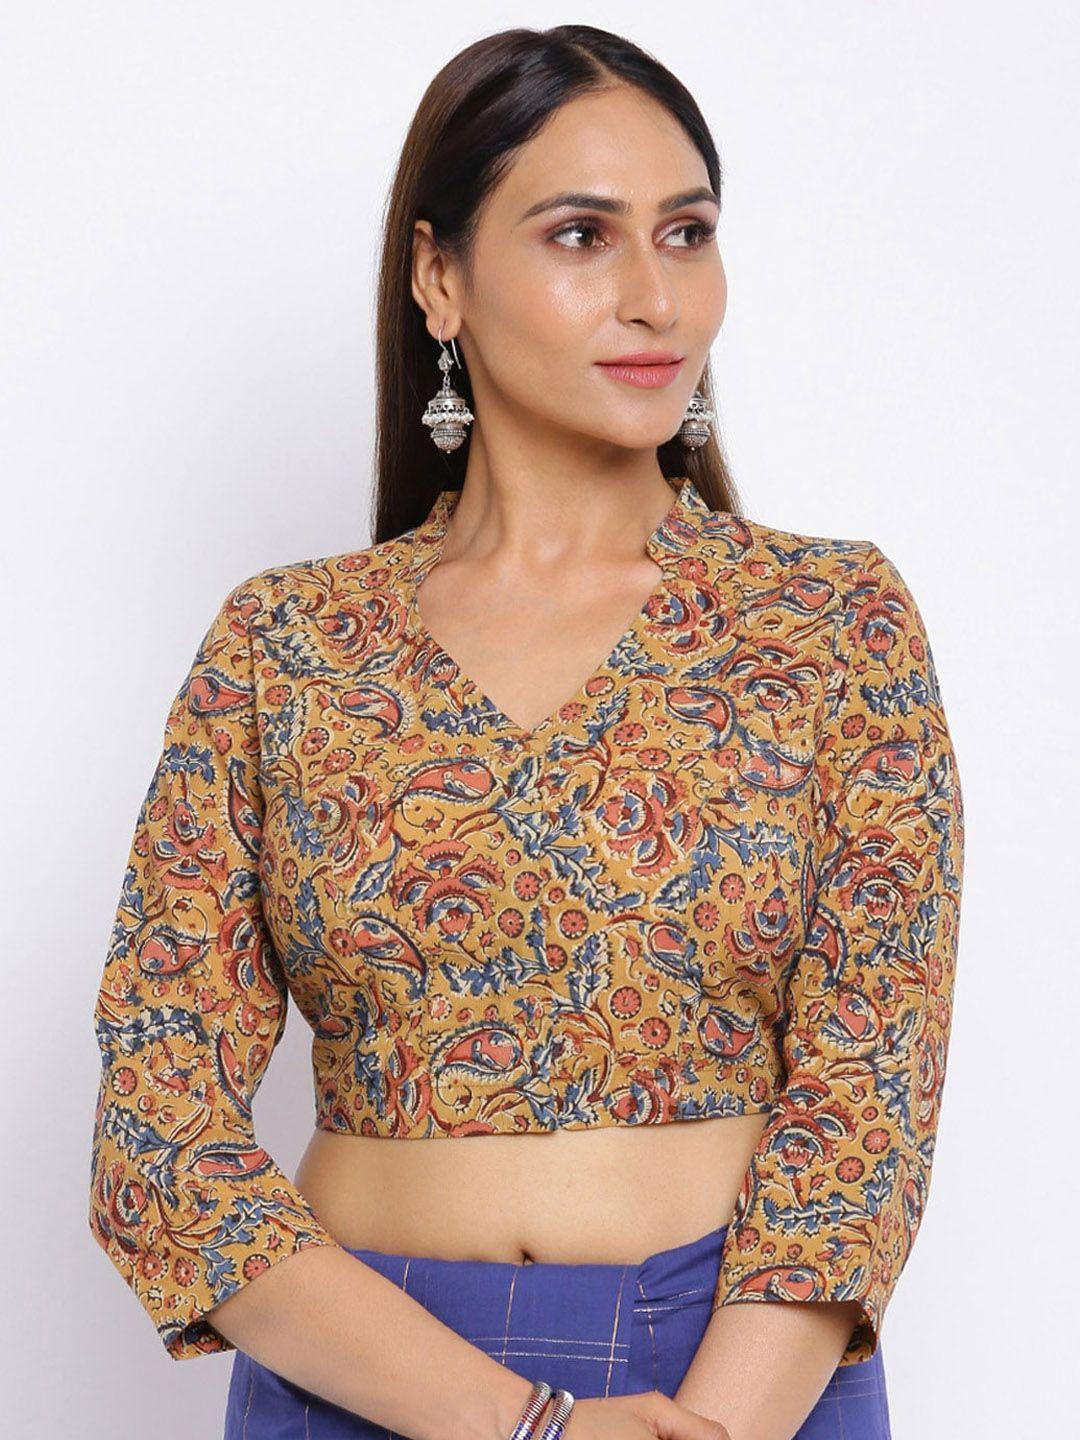 fabindia women mustard yellow & red kalamkari printed cotton saree blouse